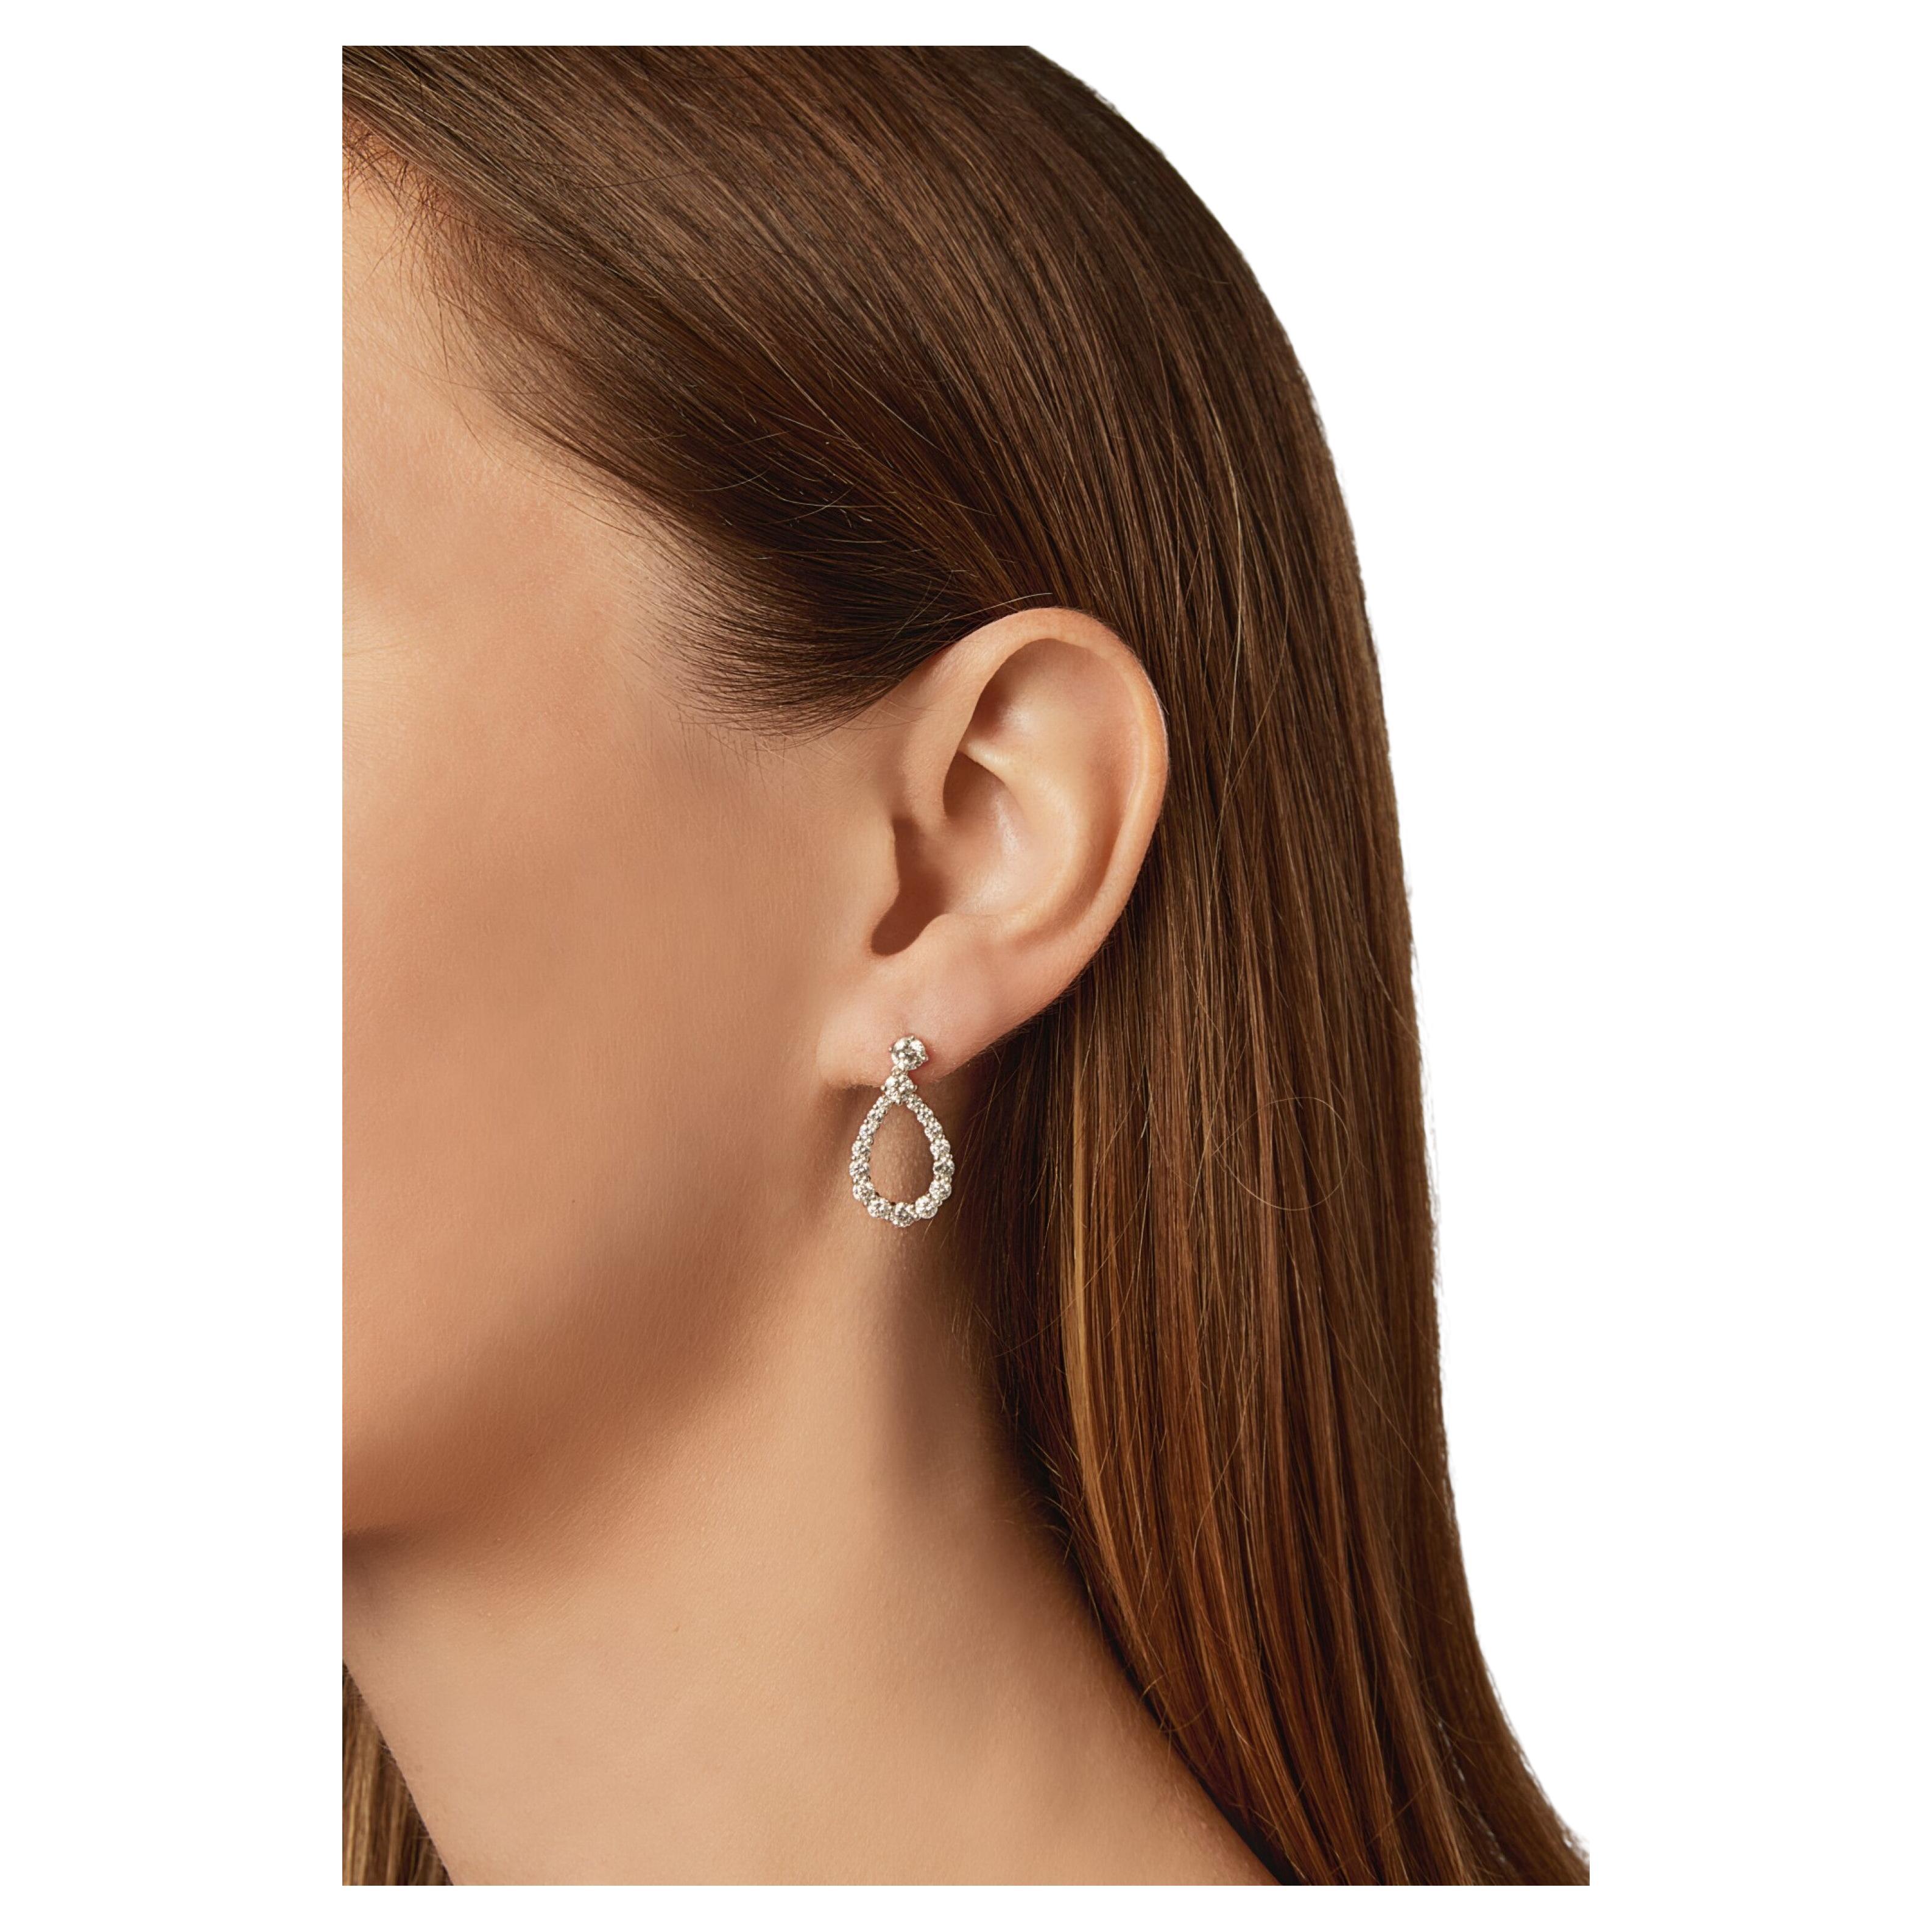 Sie sind der Inbegriff von Luxus und Raffinesse: die Harry Winston Diamond Loop Diamond Earrings in mittlerer Größe, die aus Platin gefertigt sind und zeitlose Eleganz ausstrahlen.

Mit einem Gewicht von 4,3 Gramm und einer Größe von 20 x 9,3 mm